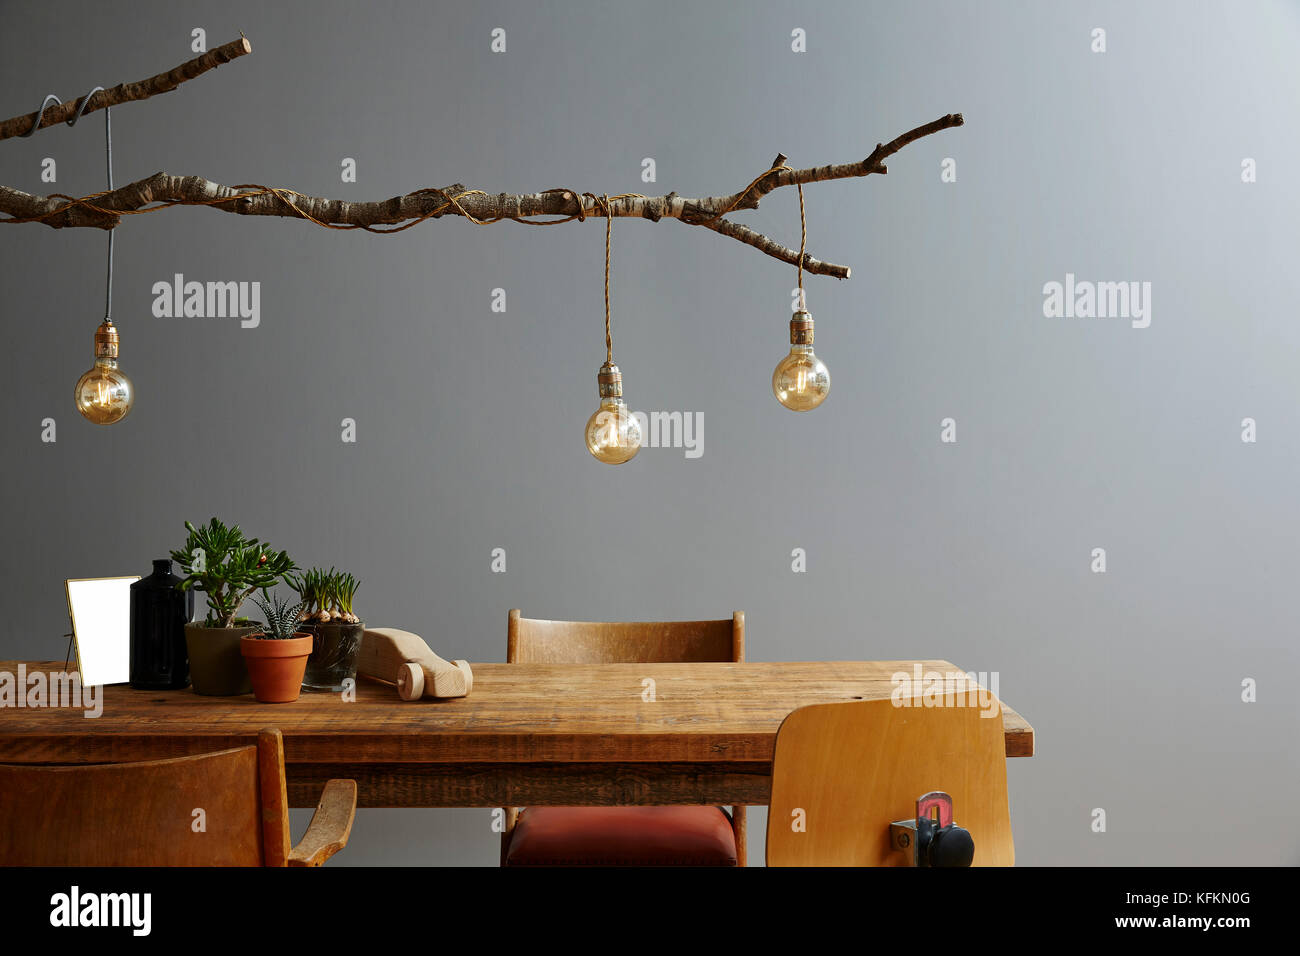 Interni moderni mobili in legno e progettazione lampada ramo e le lampadine Foto Stock